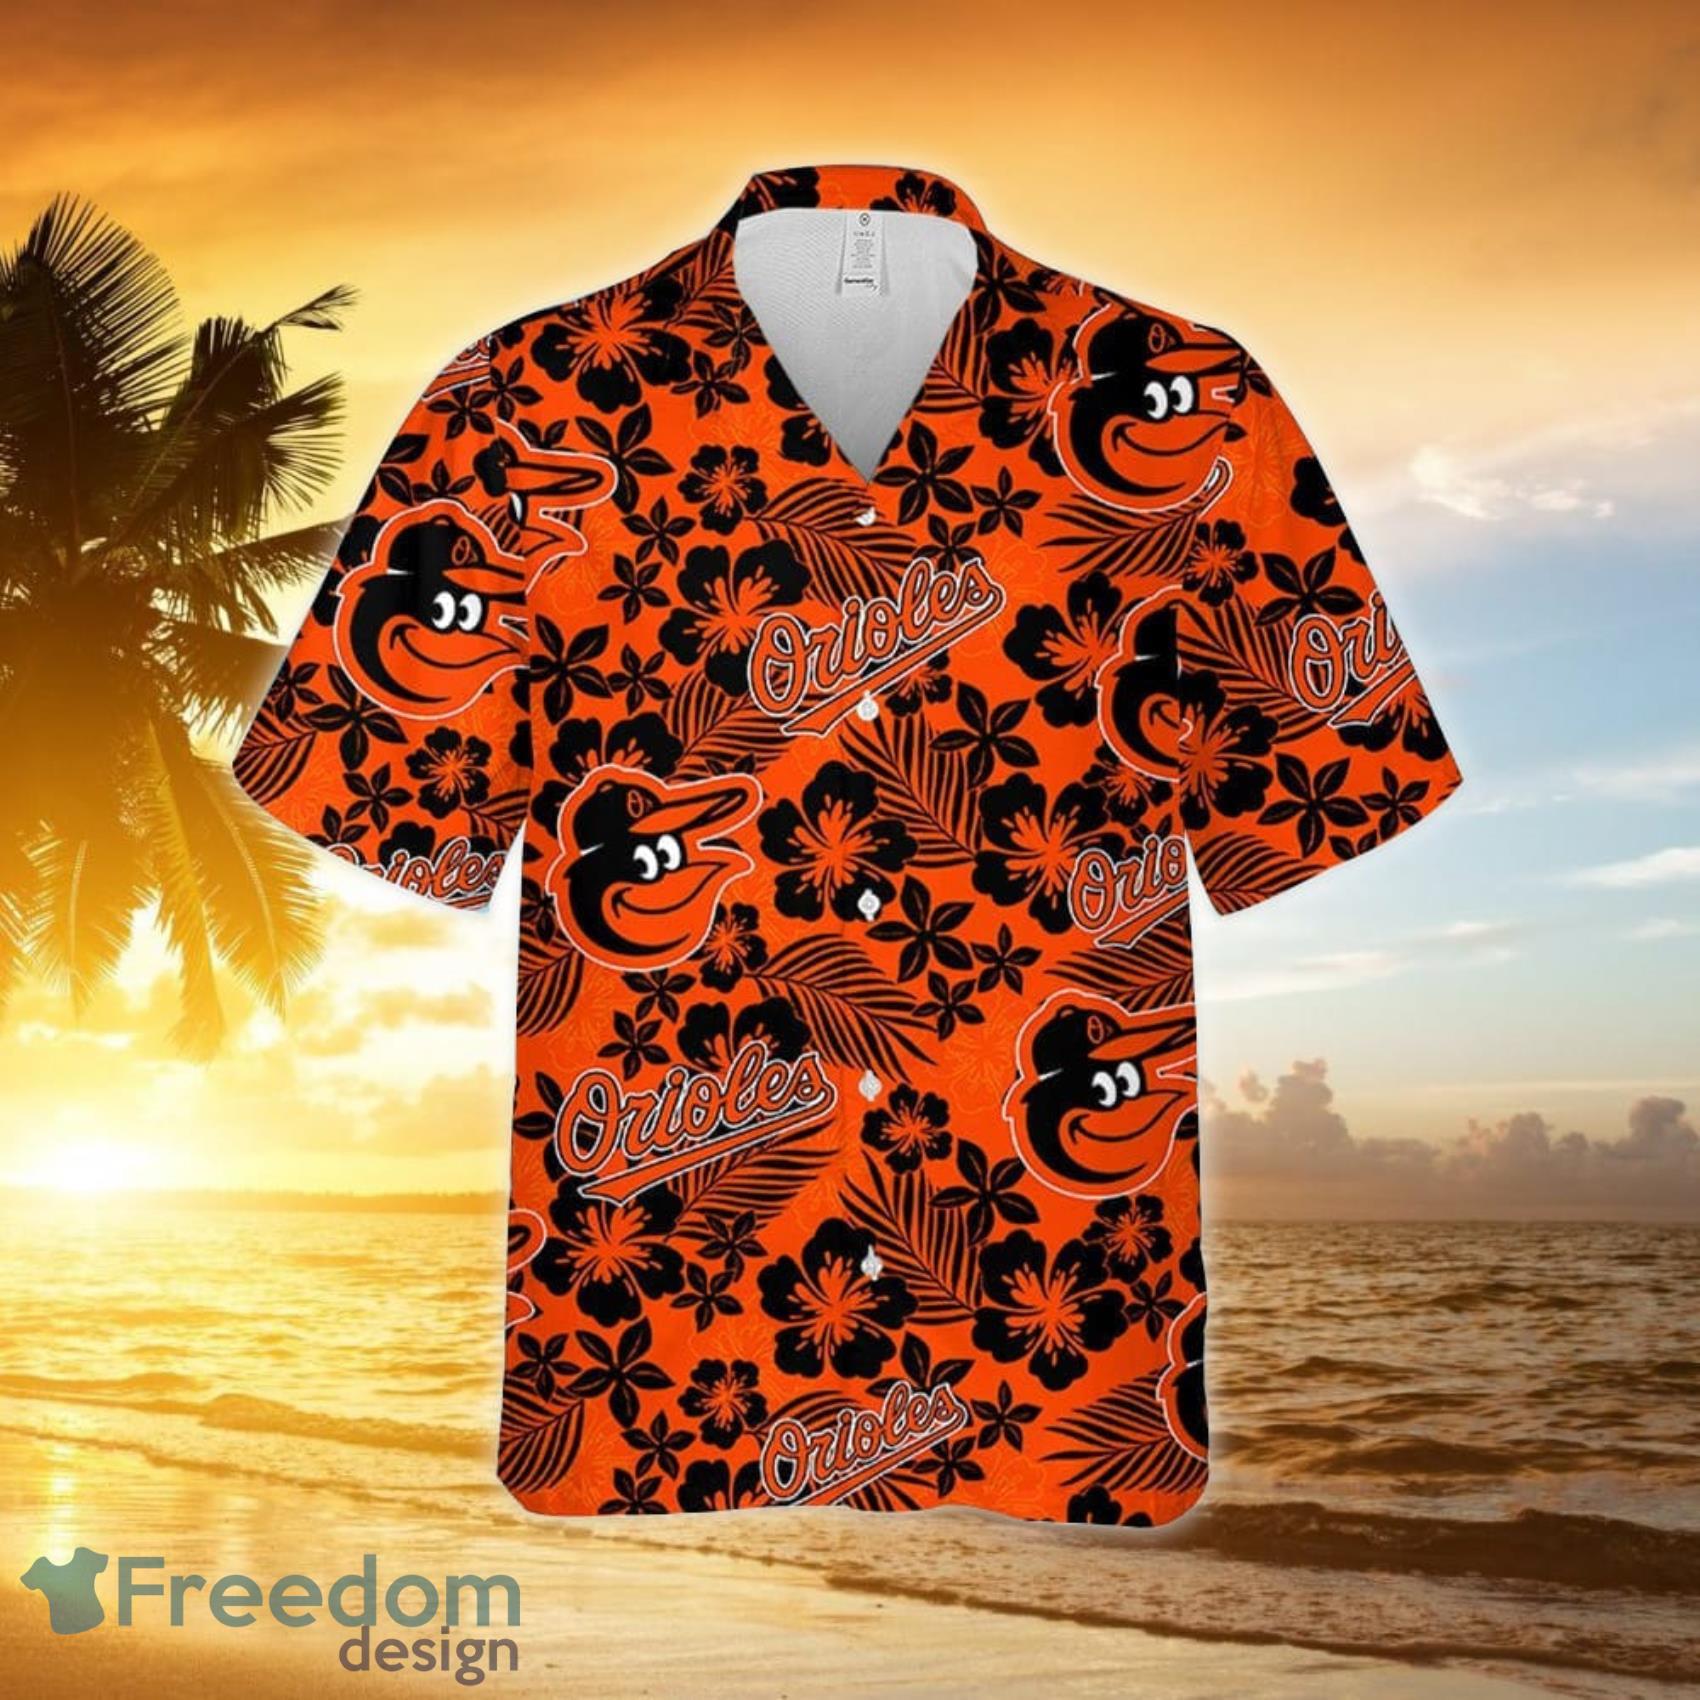 Baltimore Orioles MLB Hawaiian Shirt For Men Women Gift For Fans -  Freedomdesign